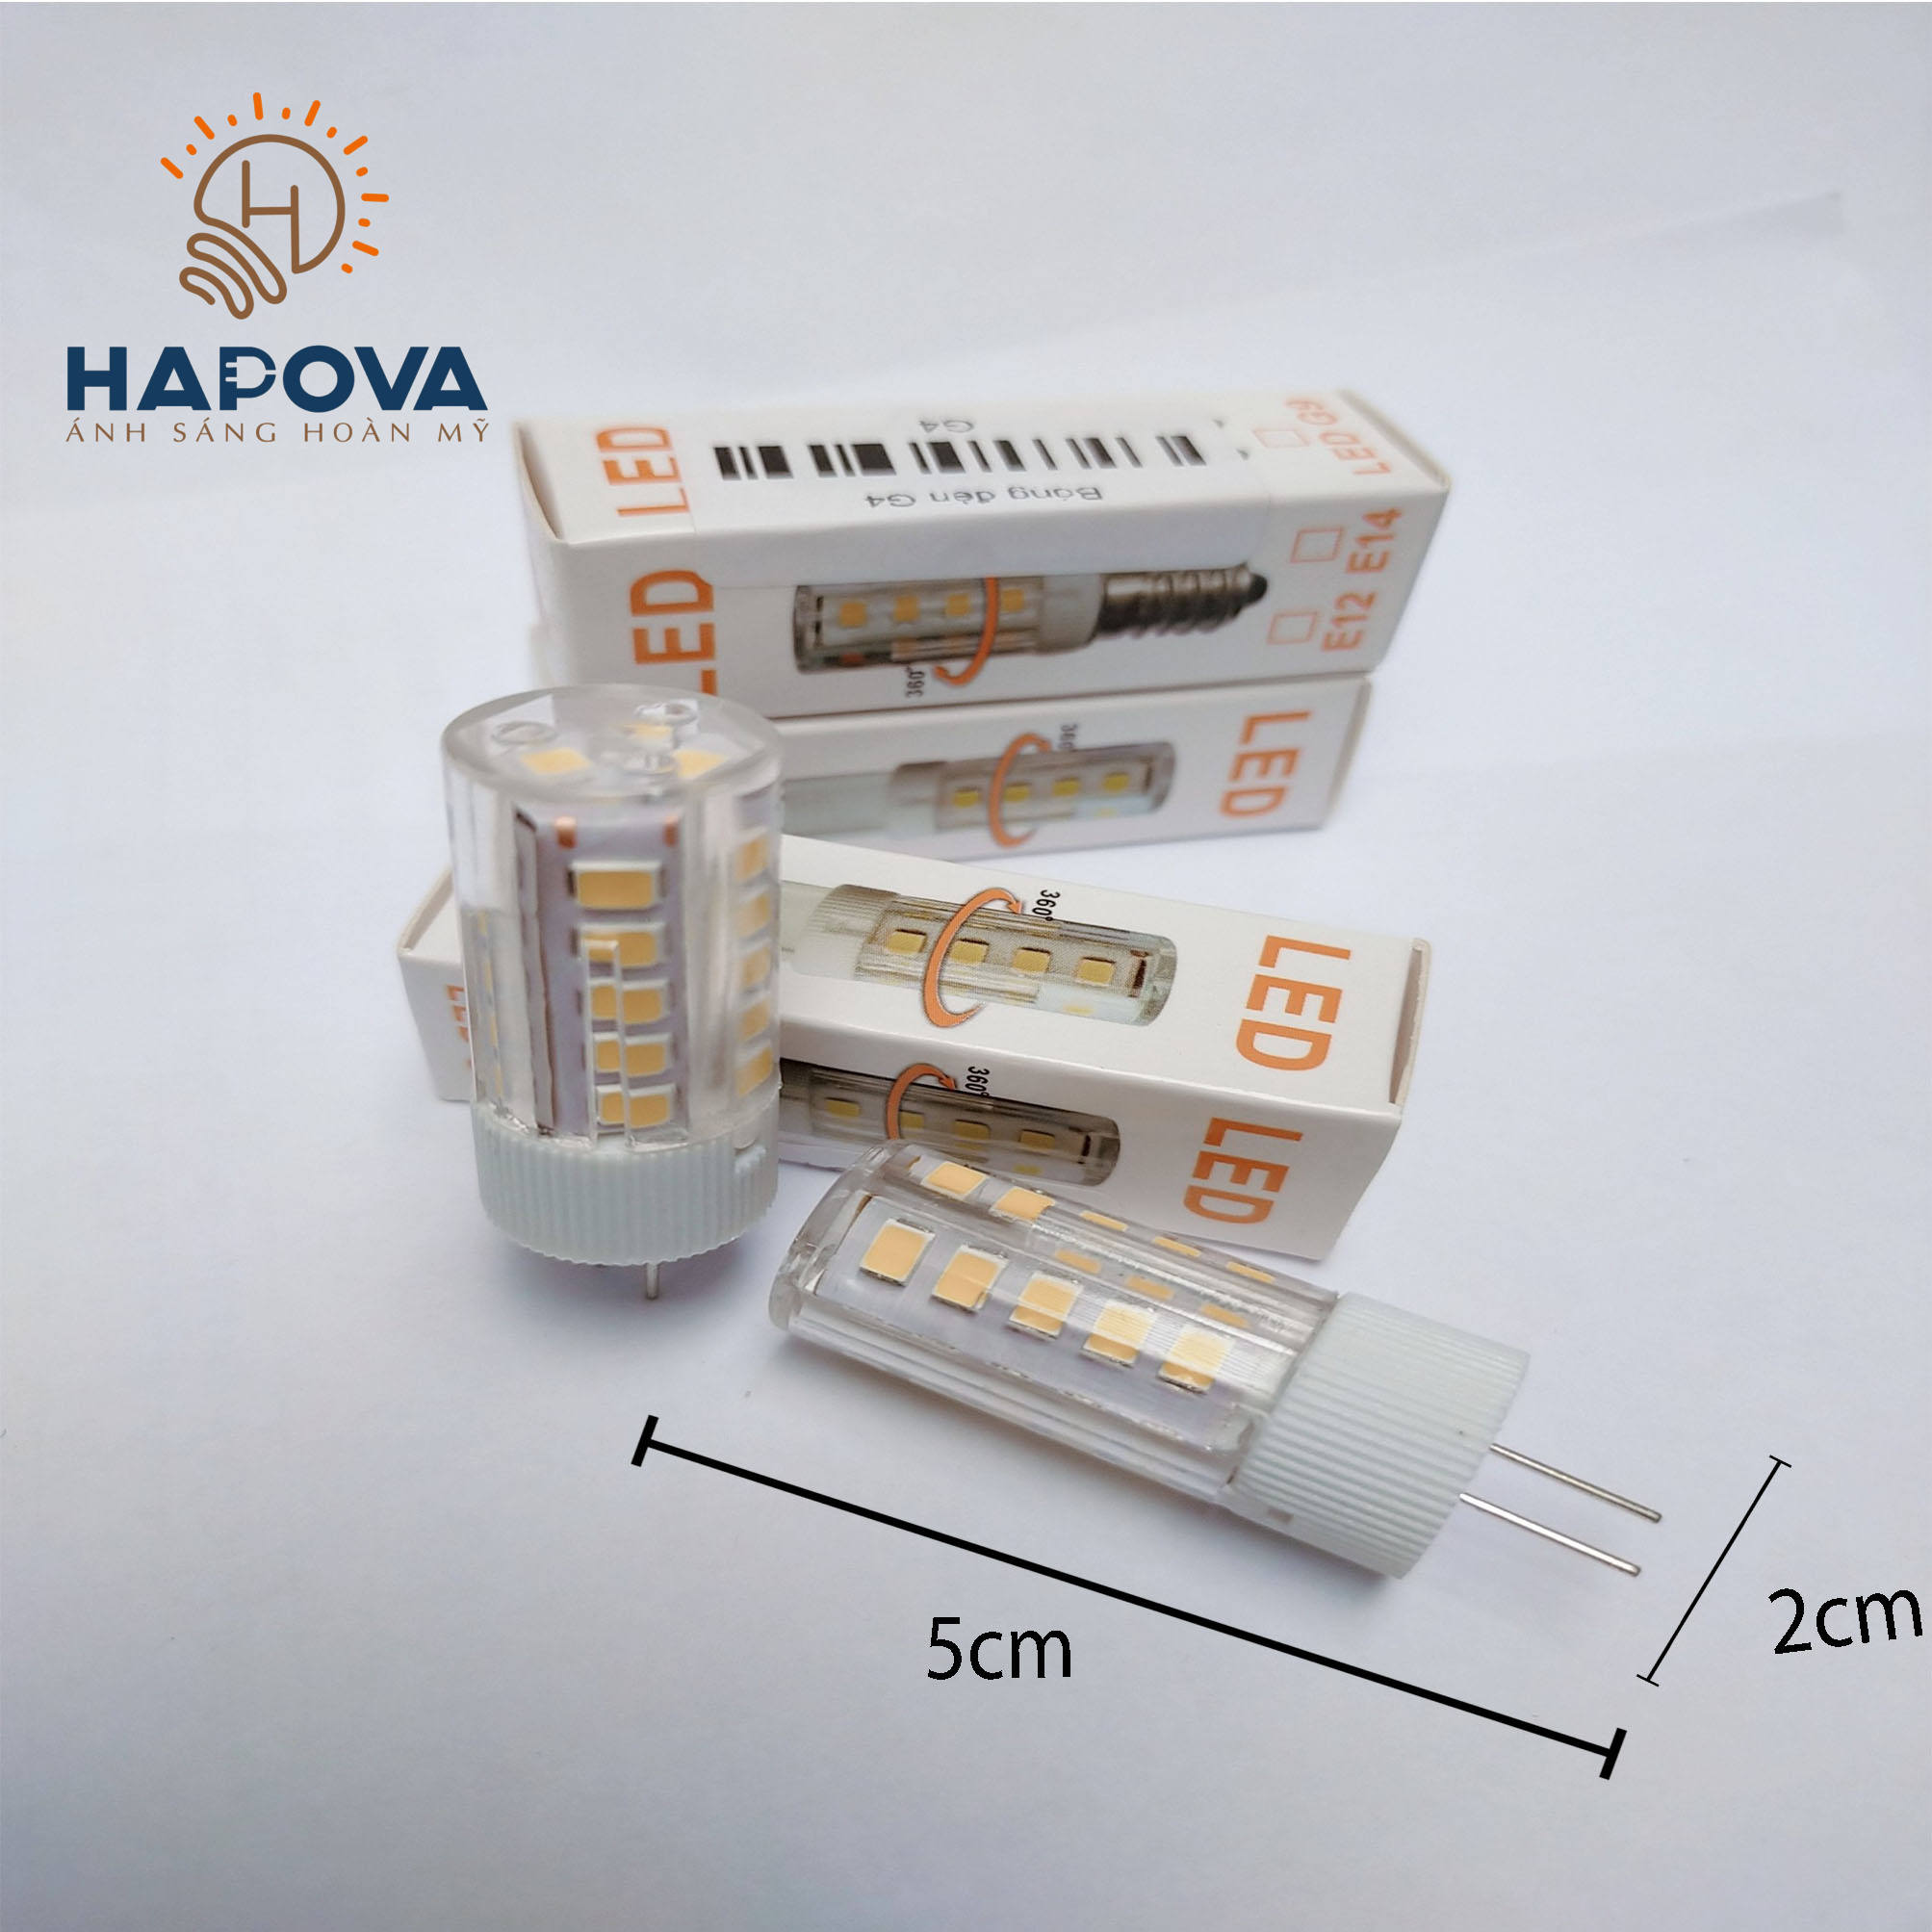 Bóng đèn LED ghim ngón HAPOVA EVIS G4 3W - 220V nhỏ gọn tiện dụng. LED chân kim cho đèn trang trí